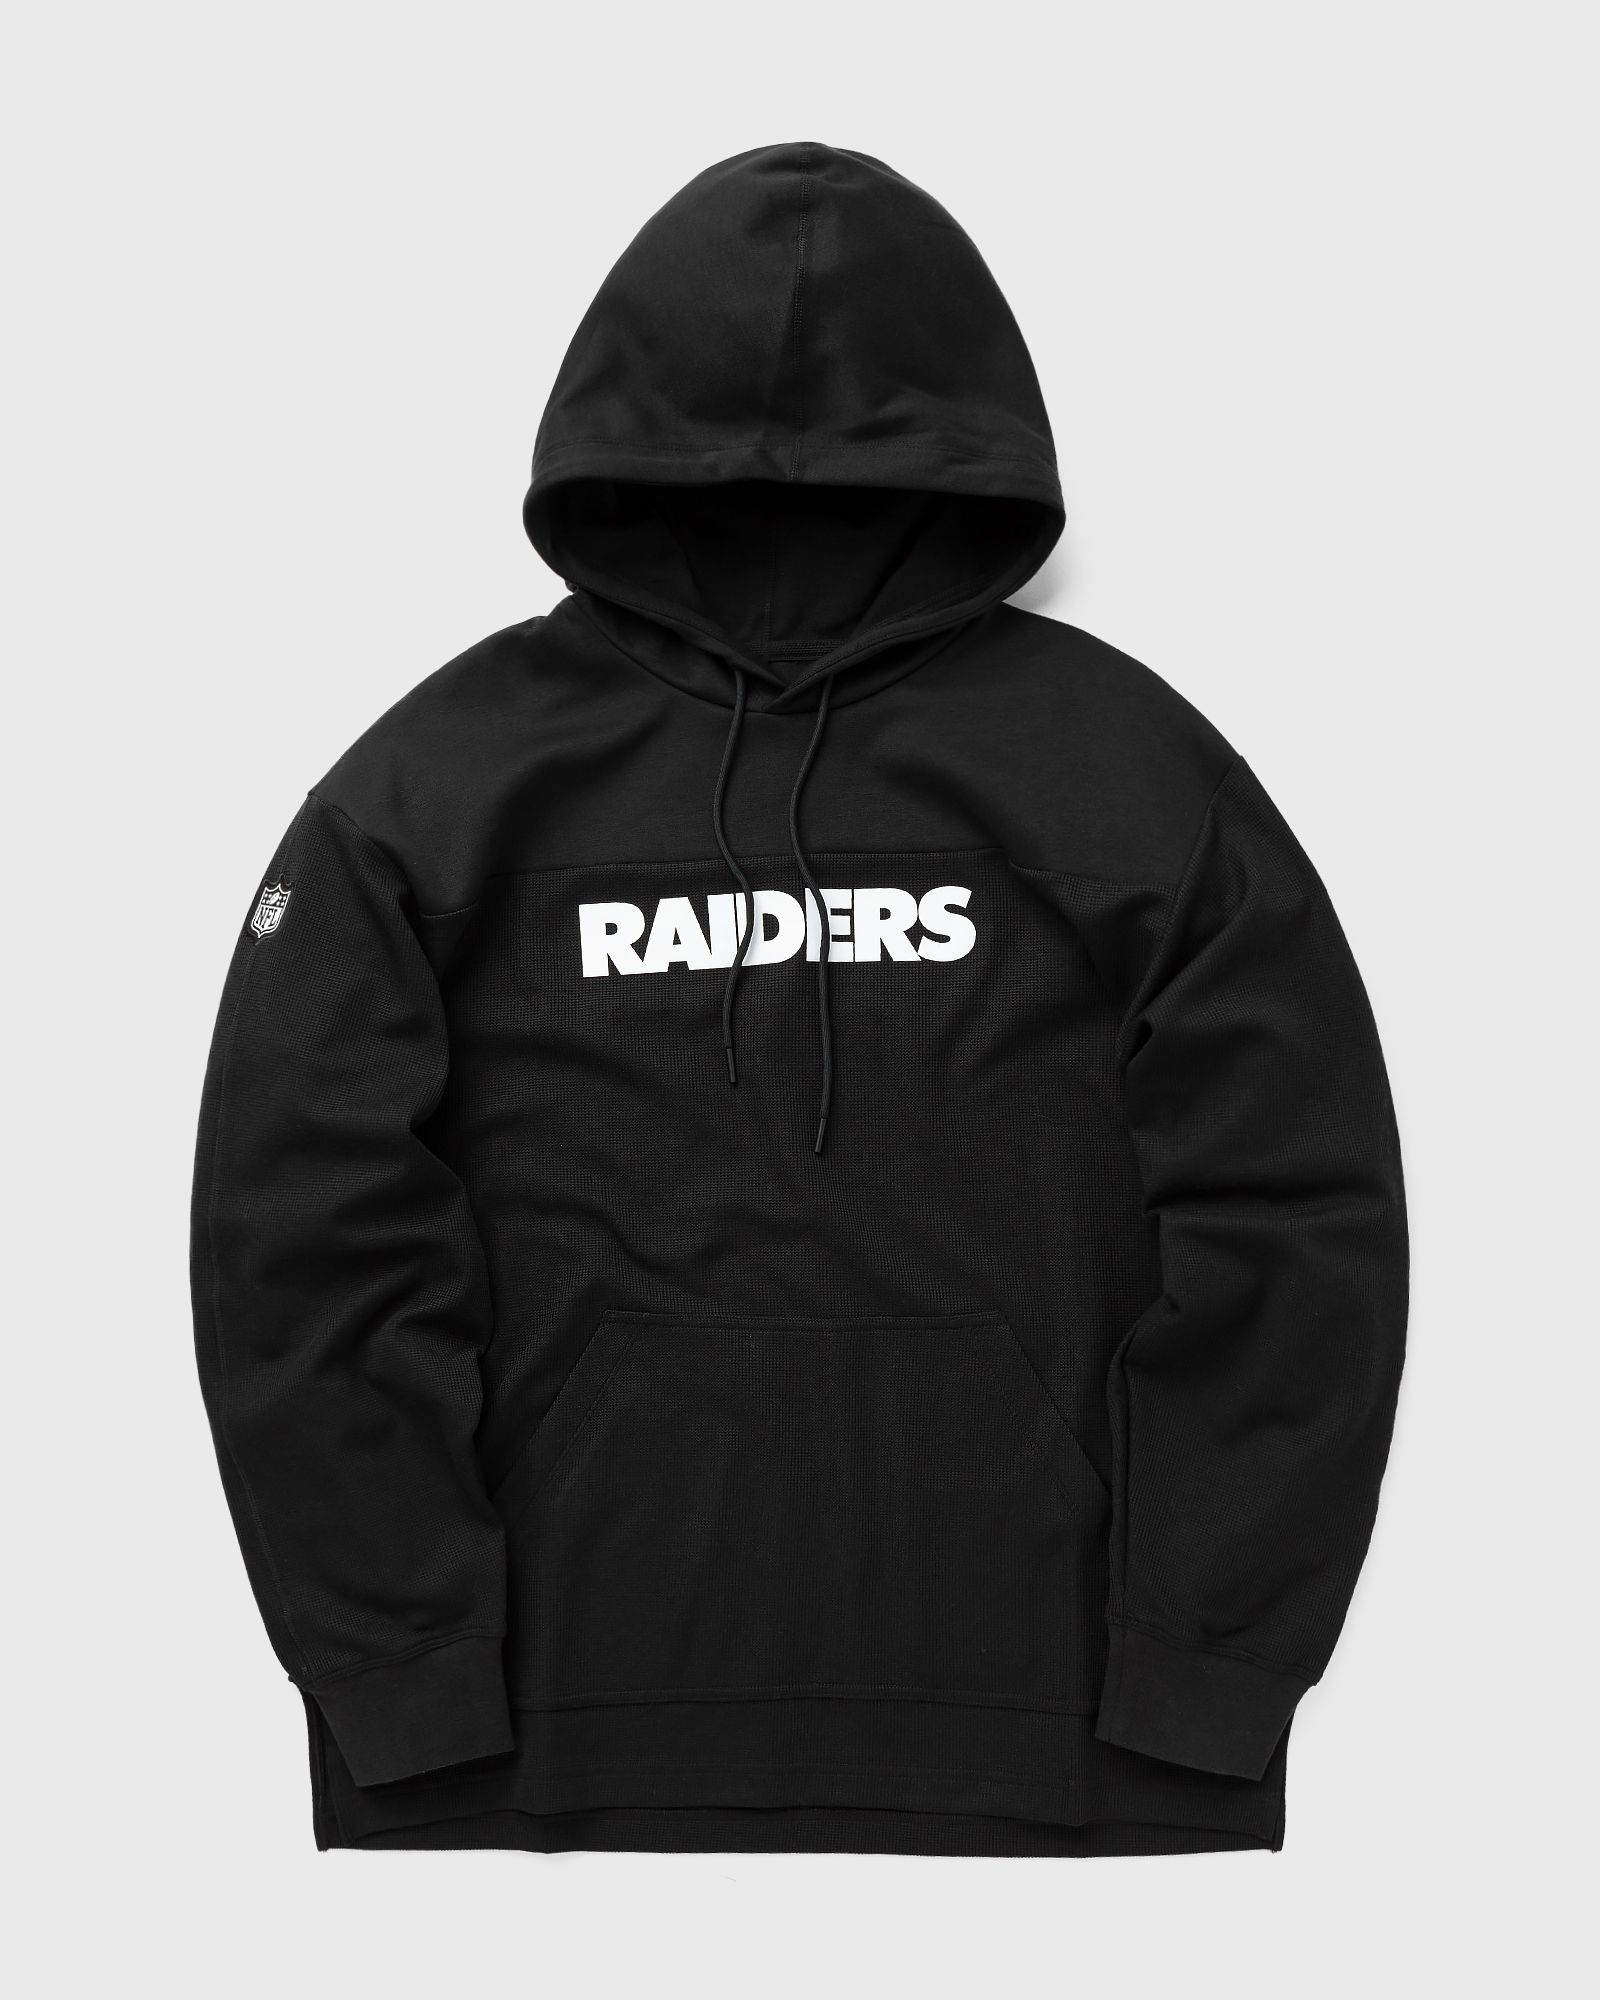 Nike - nfl las vegas raiders  jersey hoodie top men hoodies black in größe:xl